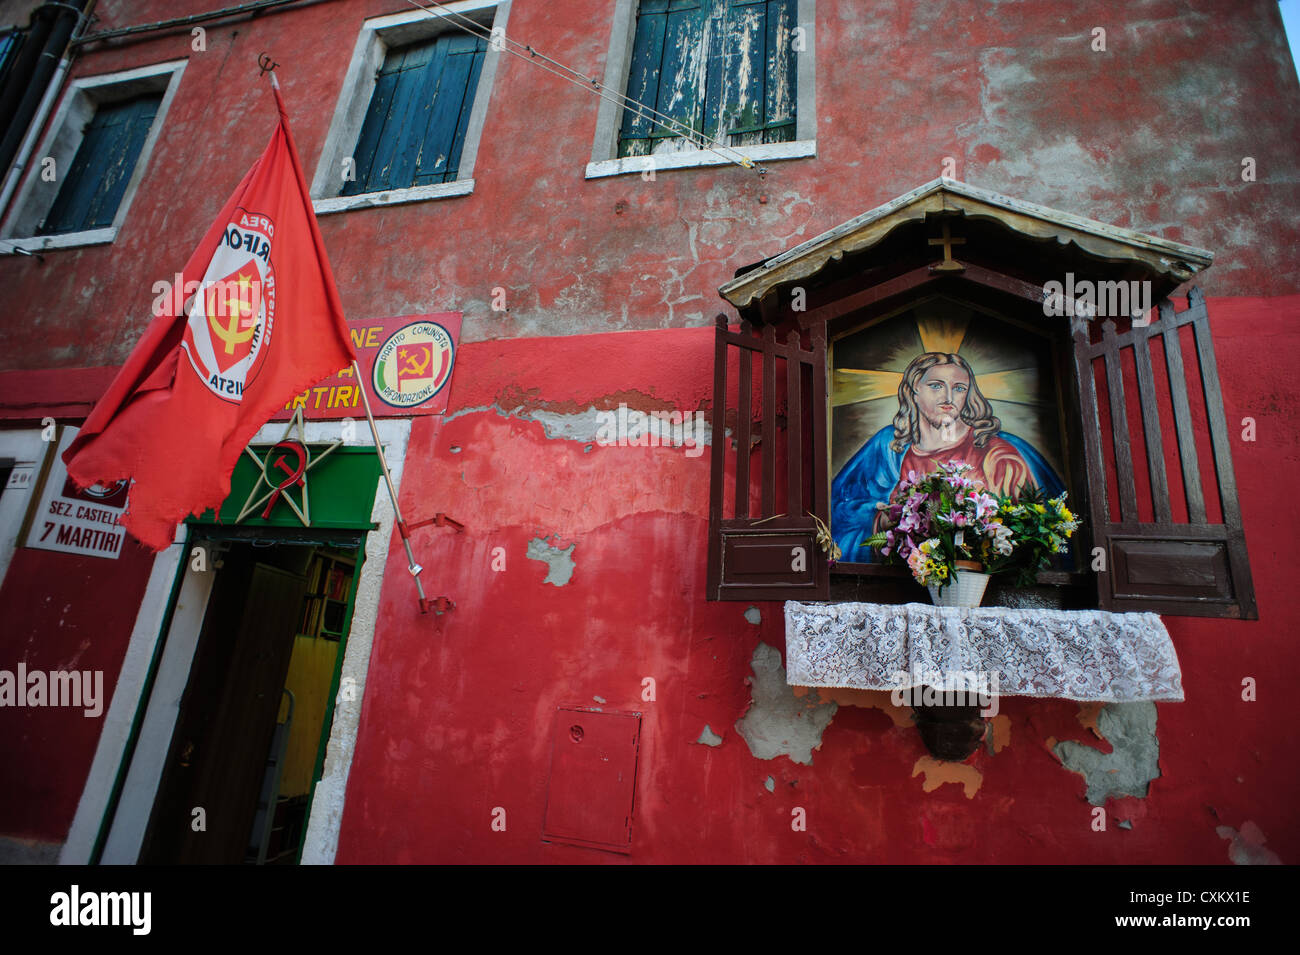 Partito comunista italiano di Office con un santuario al Sacro Cuore di Gesù sulla parete, Venezia, Italia Foto Stock